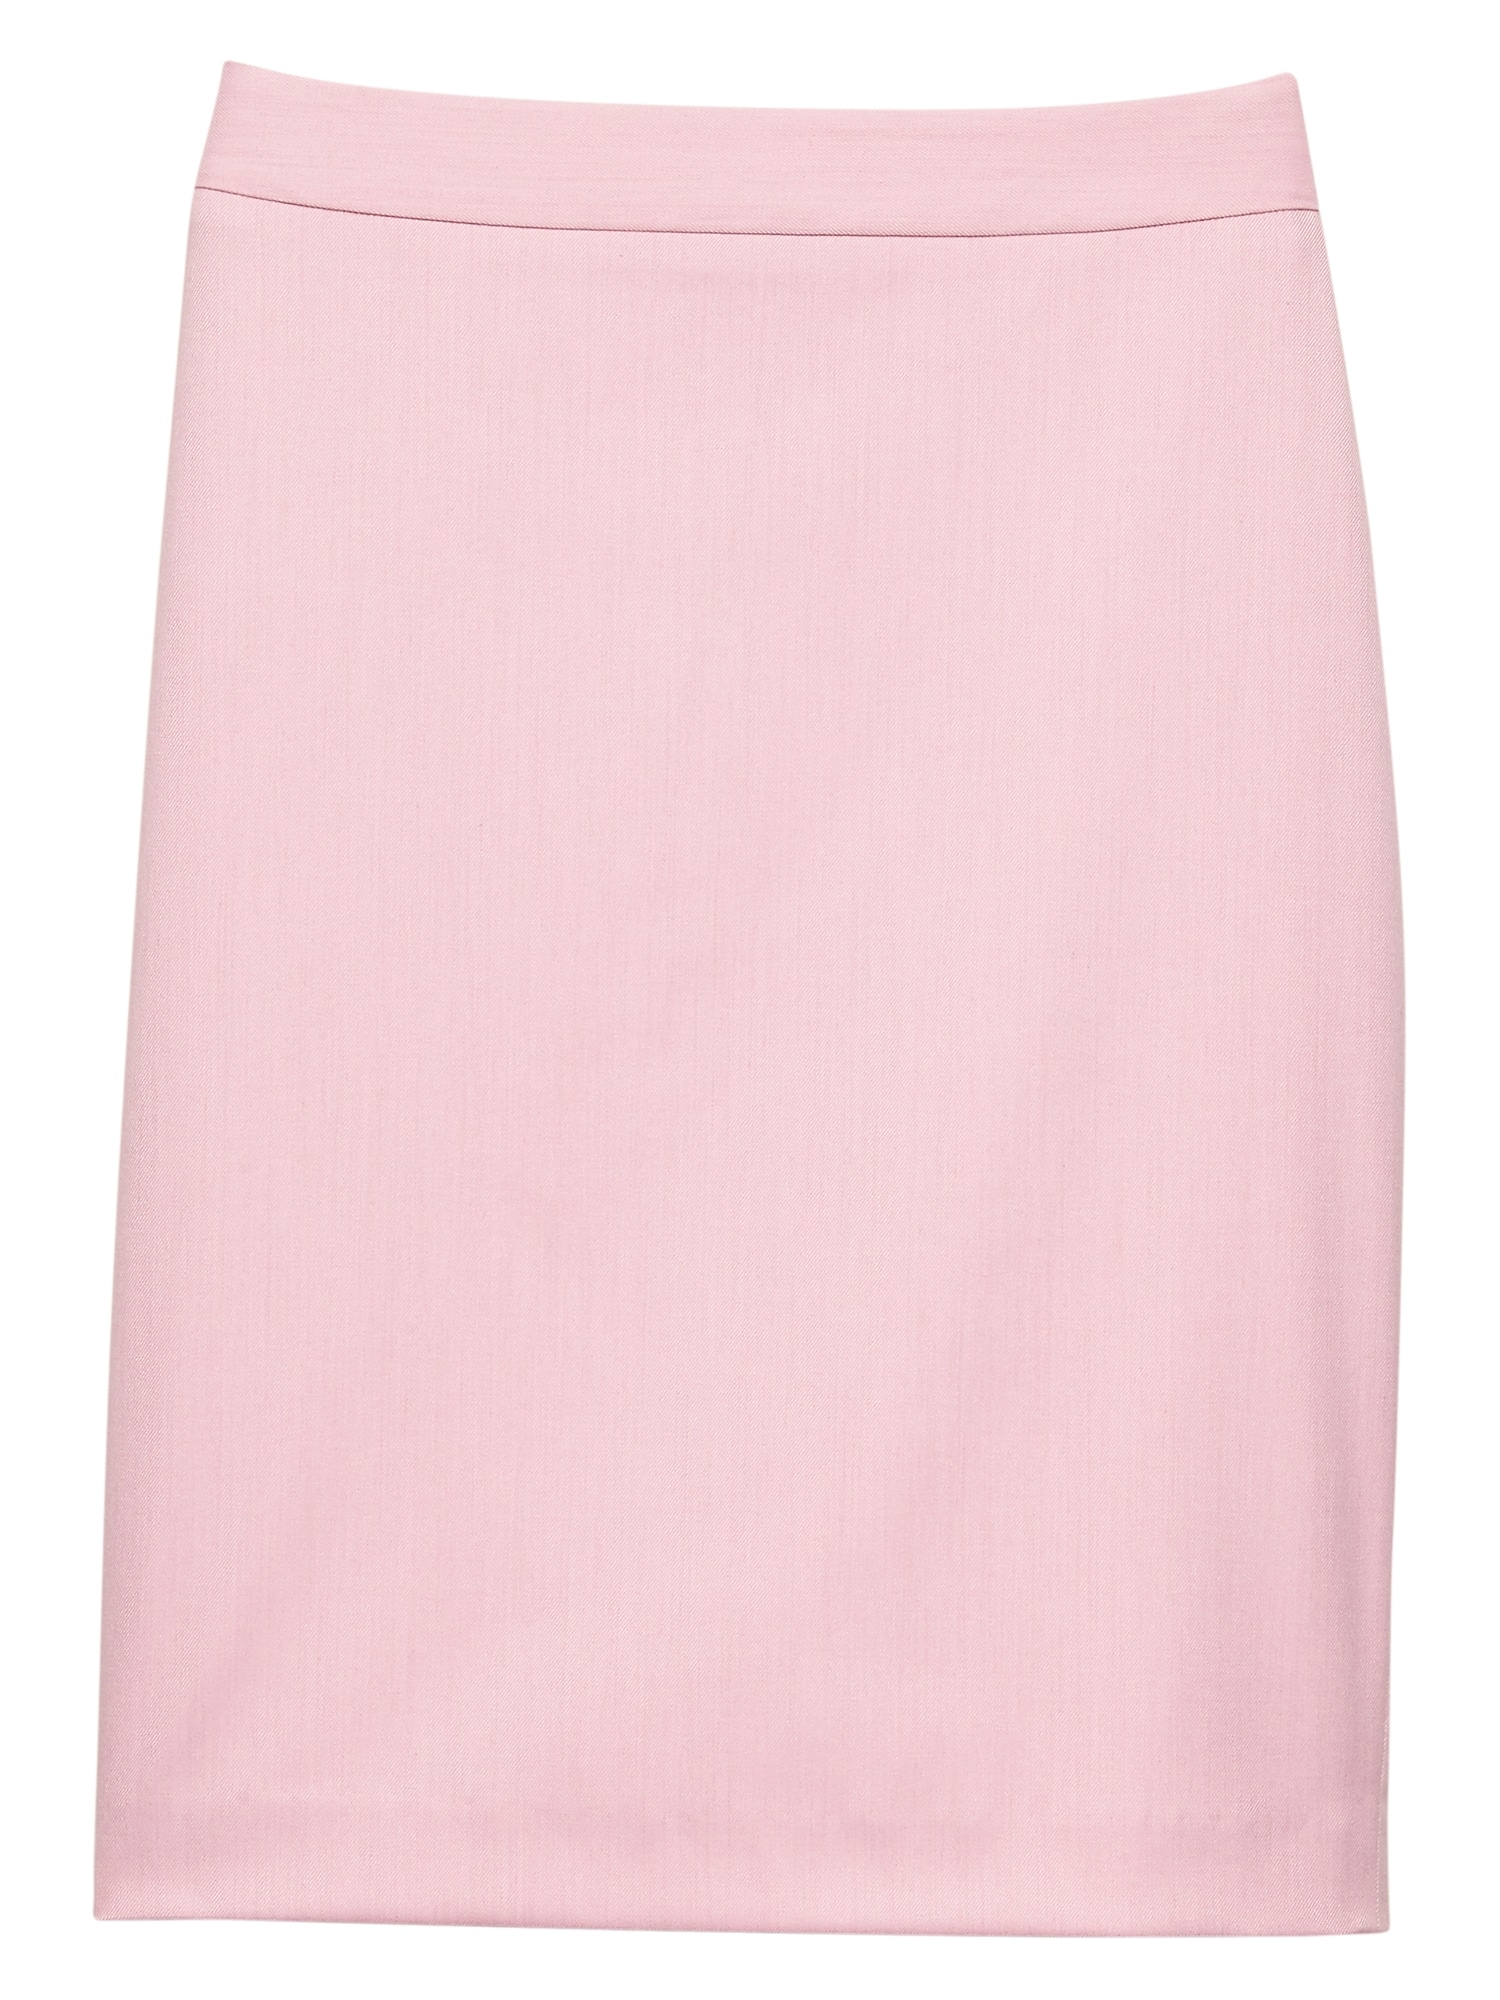 Pink Twill Pencil Skirt